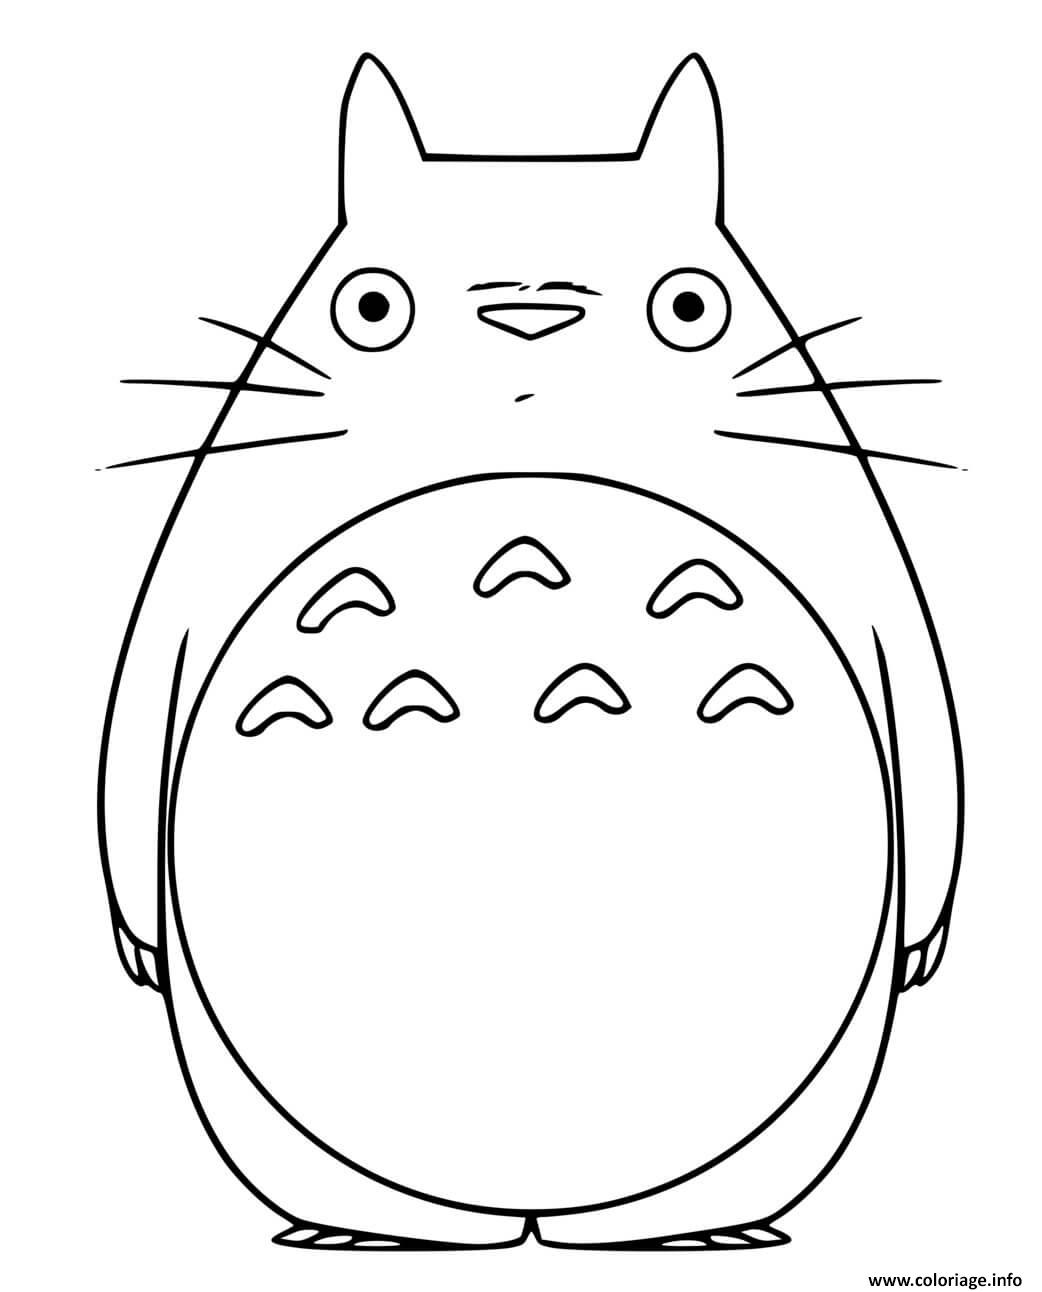 Dessin My Neighbor Totoro Coloriage Gratuit à Imprimer